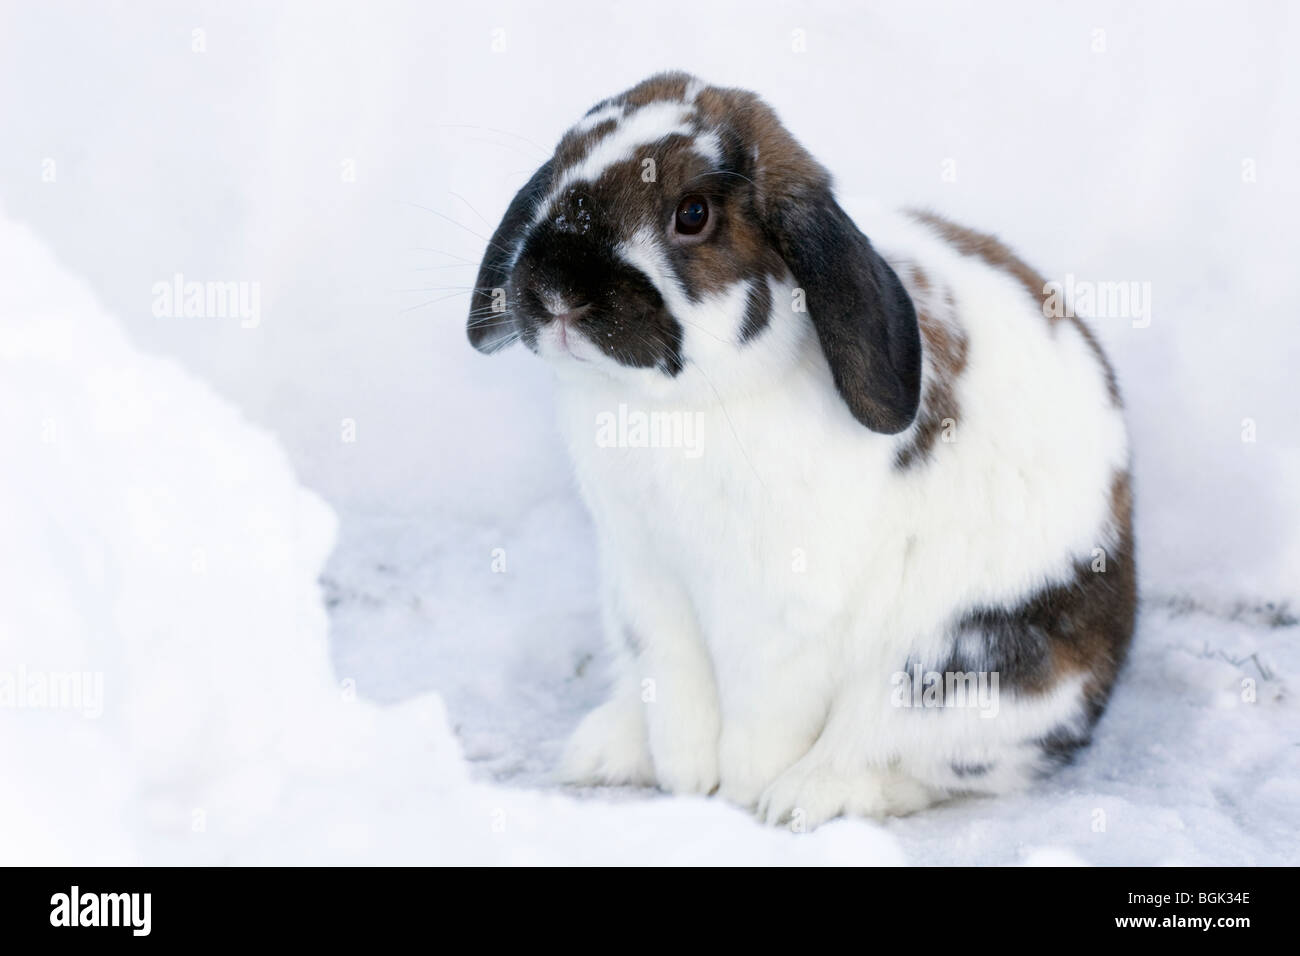 Holland Lop animale domestico nano coniglio all'aperto sul marciapiede innevato in inverno durante la sessione di esercizio Foto Stock